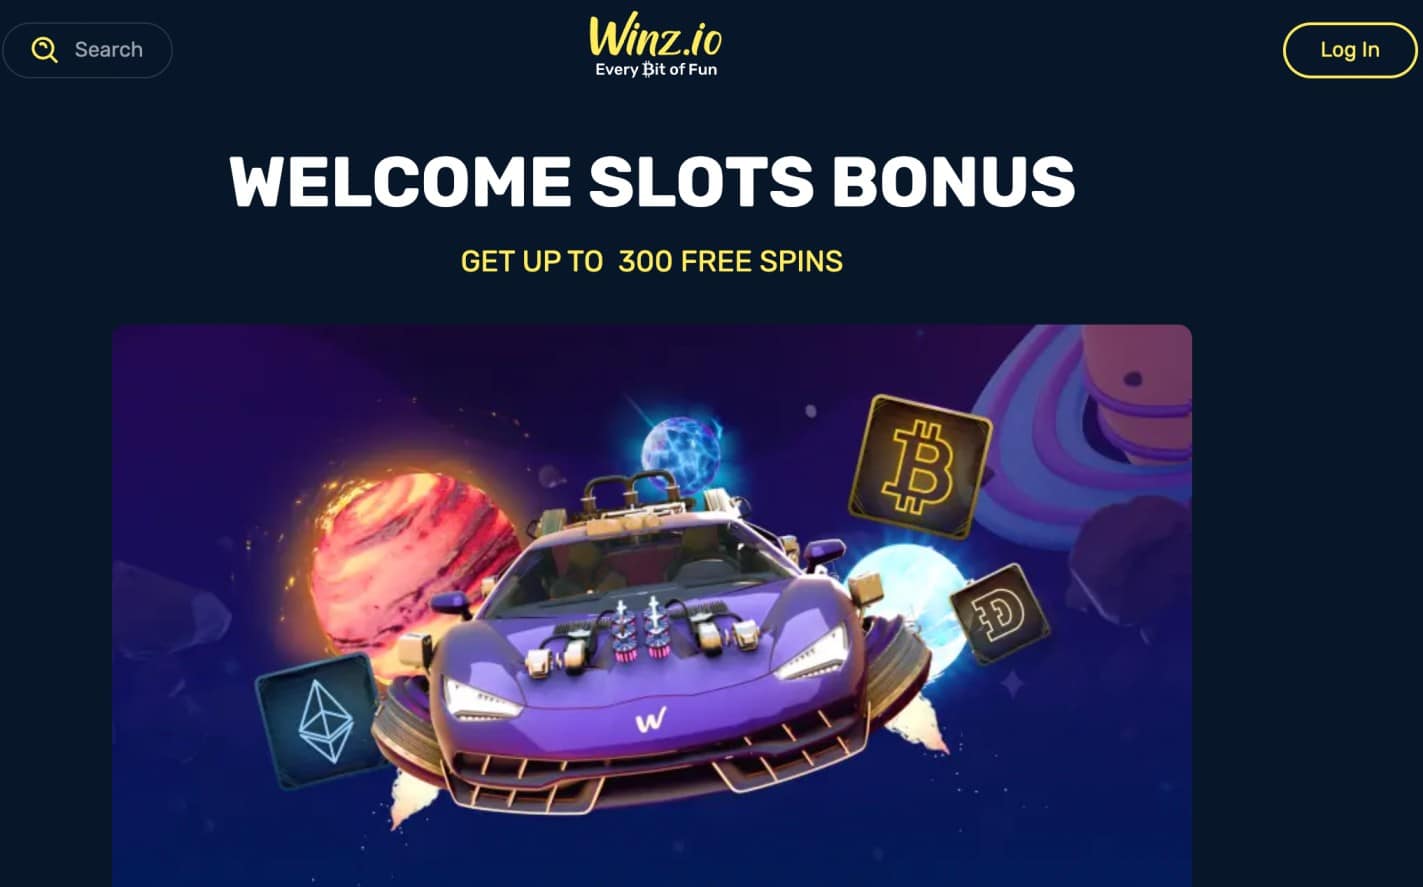 Winz.io free spins